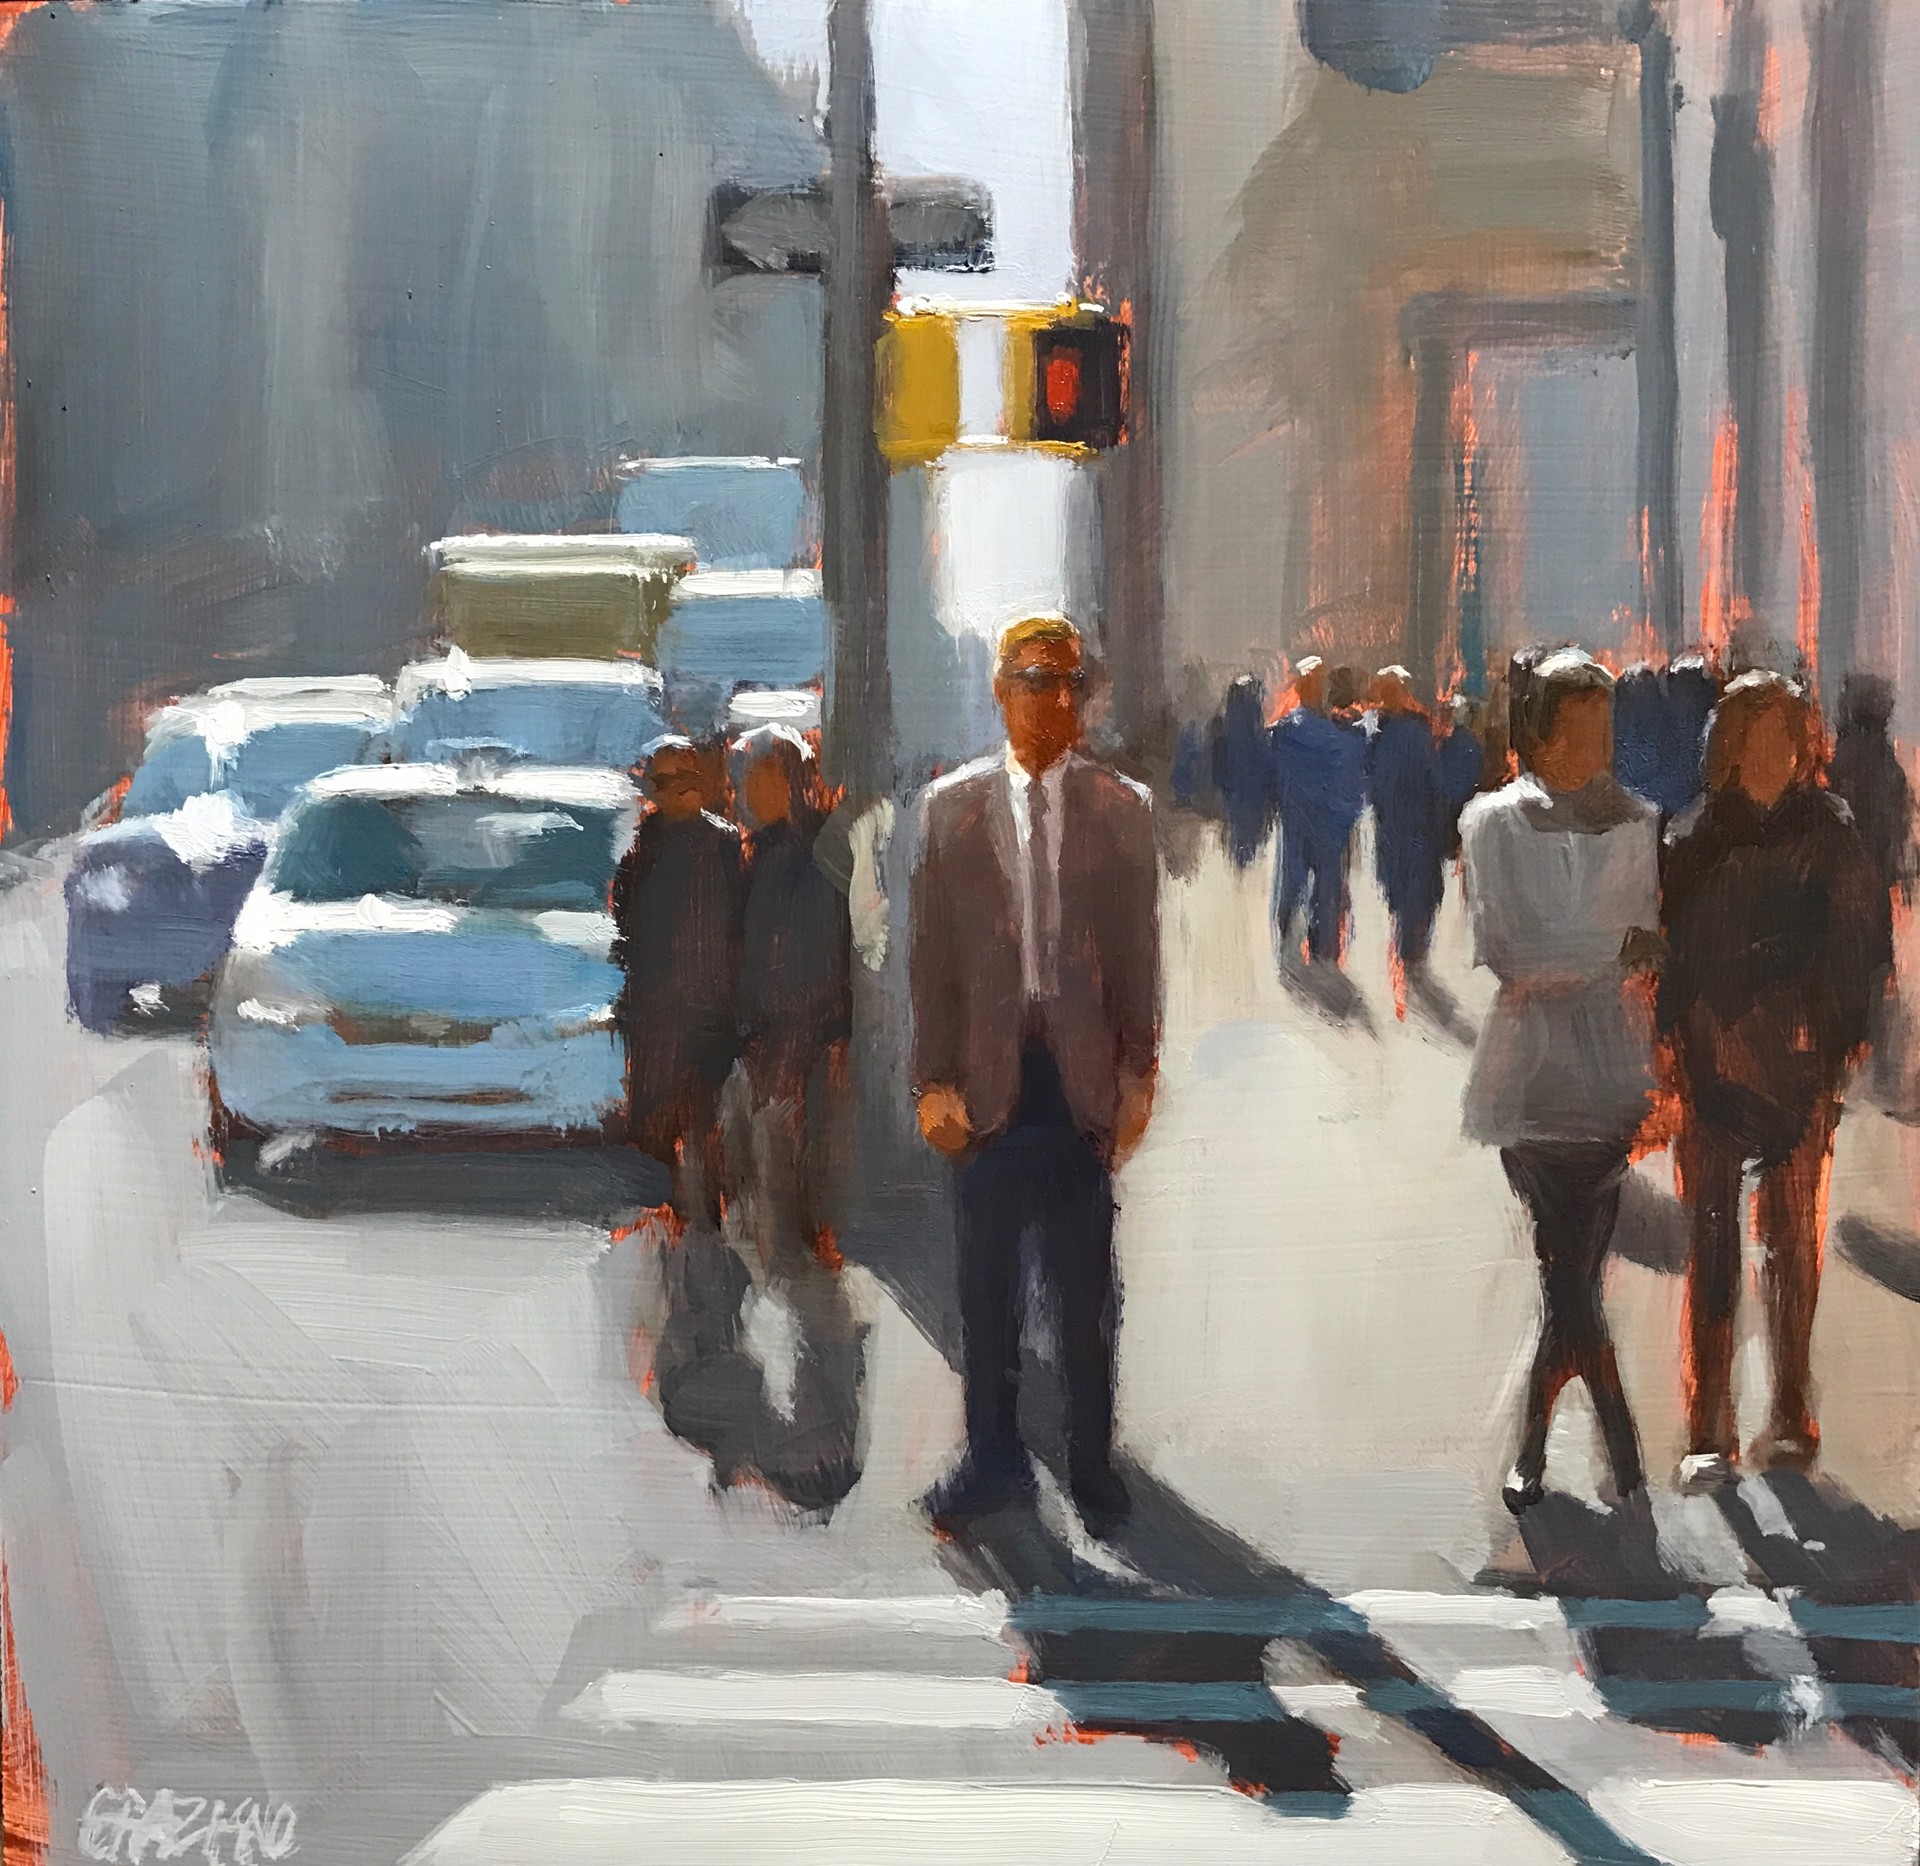 Crossing 32nd Street by Dan Graziano